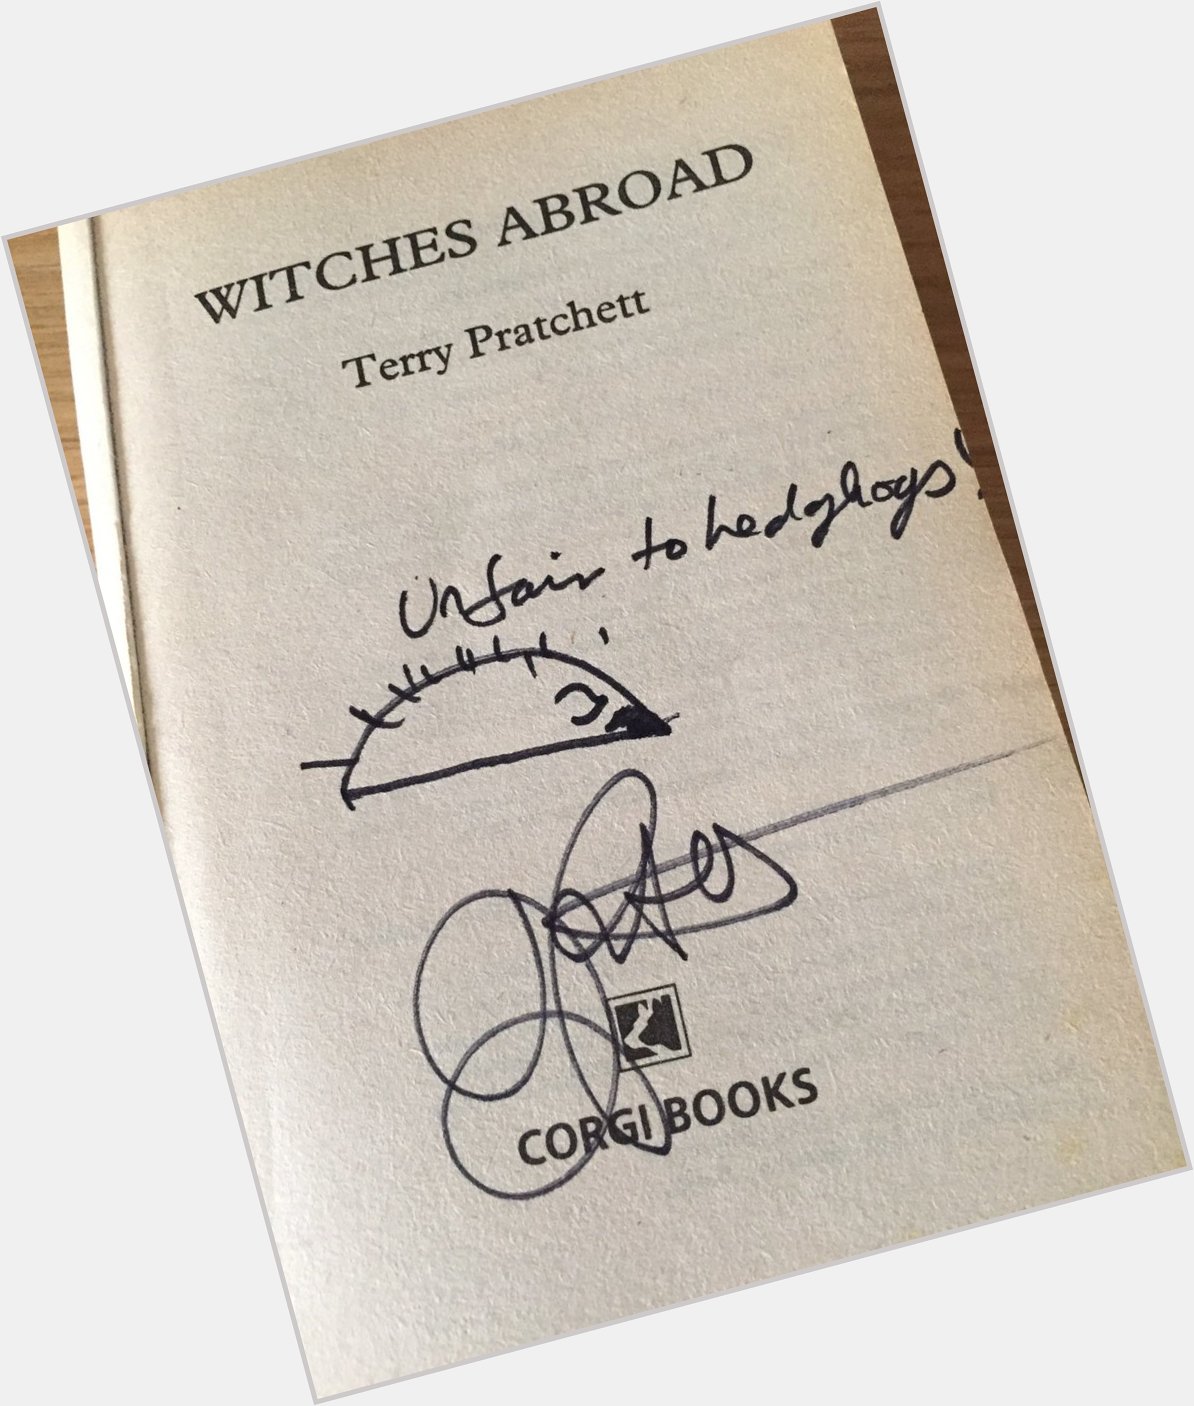   Happy Birthday Terry Pratchett. Fortunate indeed to have seen him talk. 